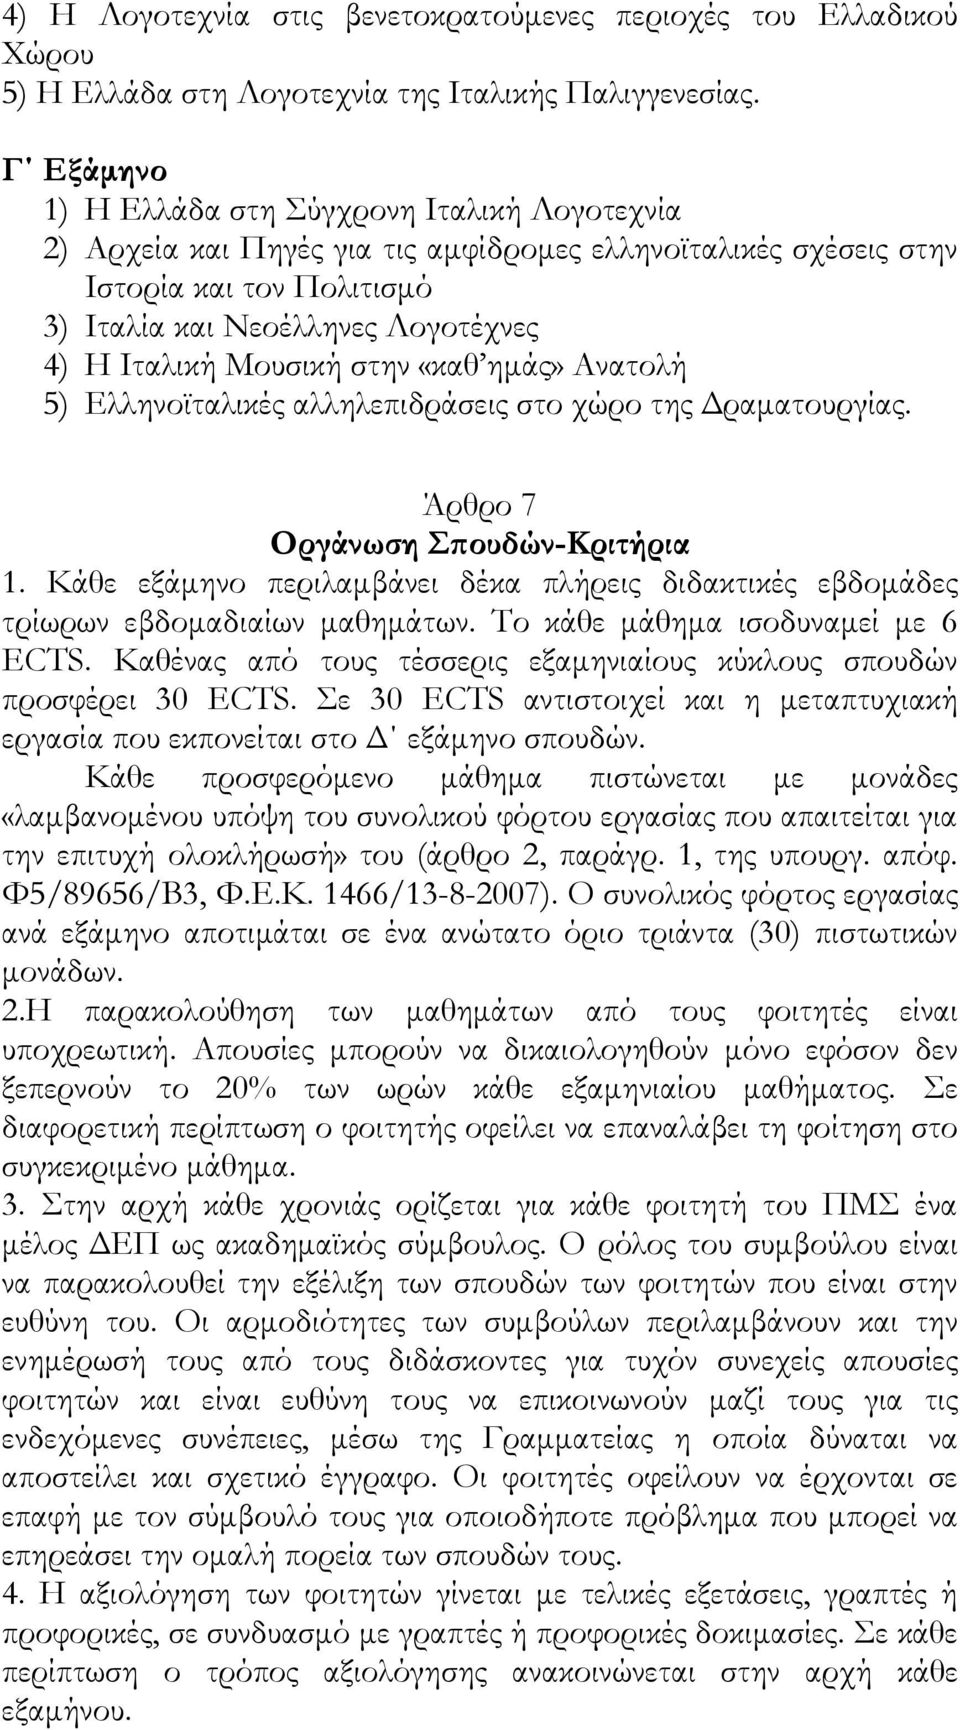 Μουσική στην «καθ ημάς» Ανατολή 5) Ελληνοϊταλικές αλληλεπιδράσεις στο χώρο της Δραματουργίας. Άρθρο 7 Οργάνωση Σπουδών-Κριτήρια 1.